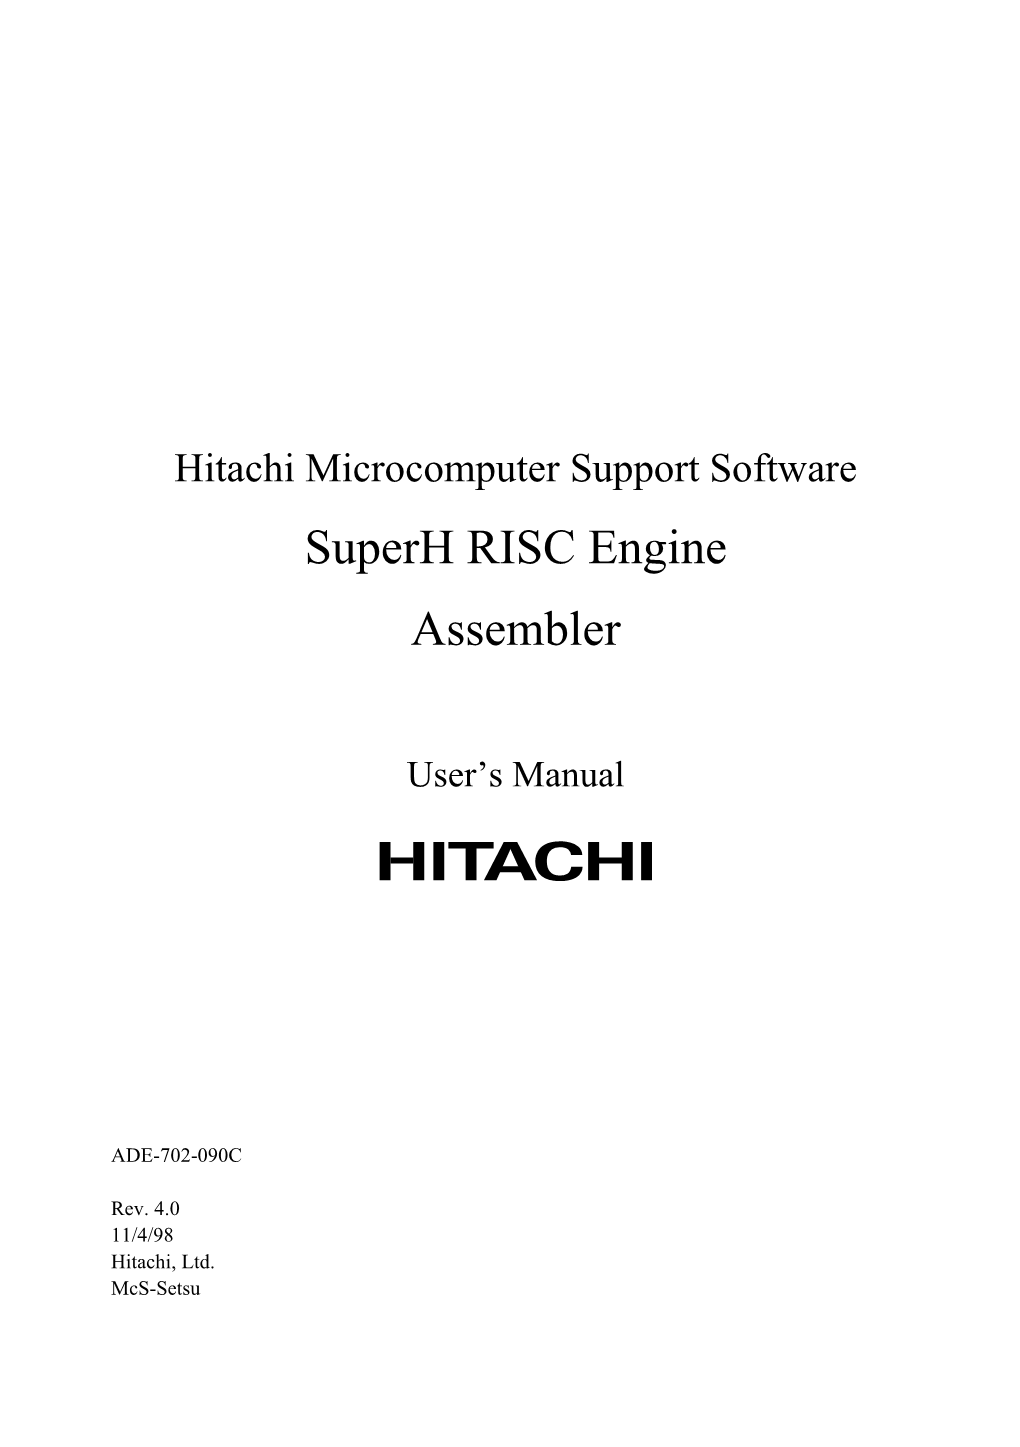 Hitachi Microcomputer Support Software Superh RISC Engine Assembler